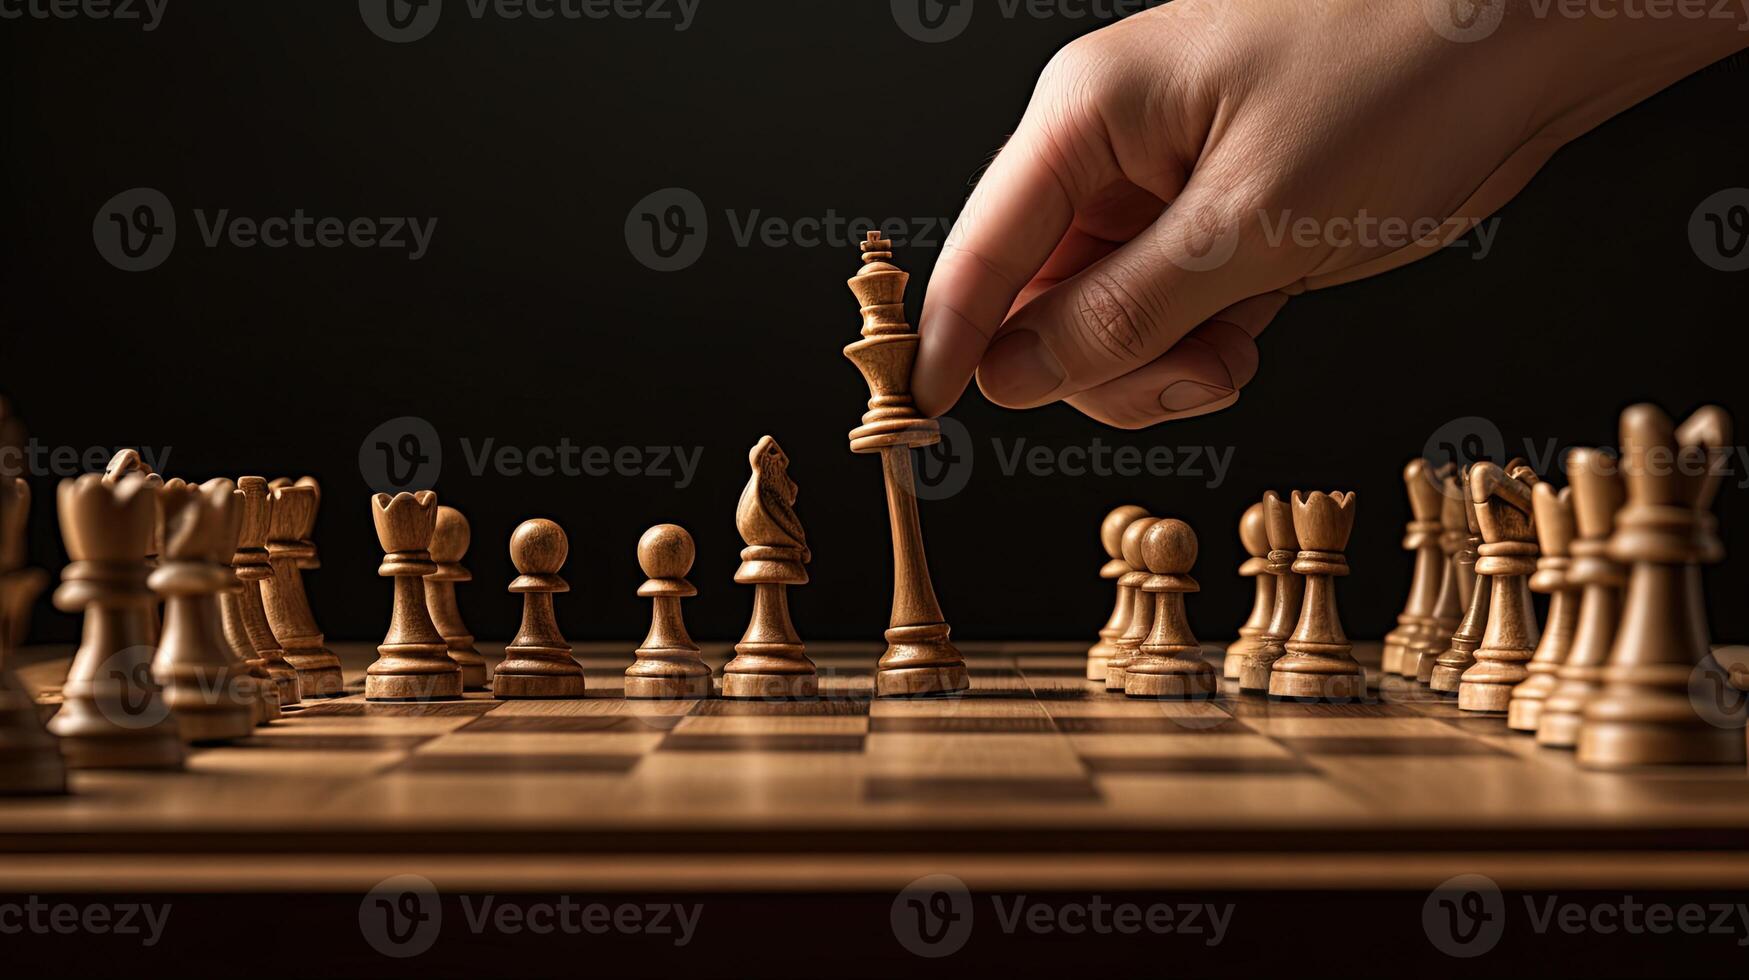 Nahansicht Hand von Mensch nehmen Nächster Schritt auf Schach Spiel. Strategie, Verwaltung oder Führung Konzept. generativ ai Technologie. foto